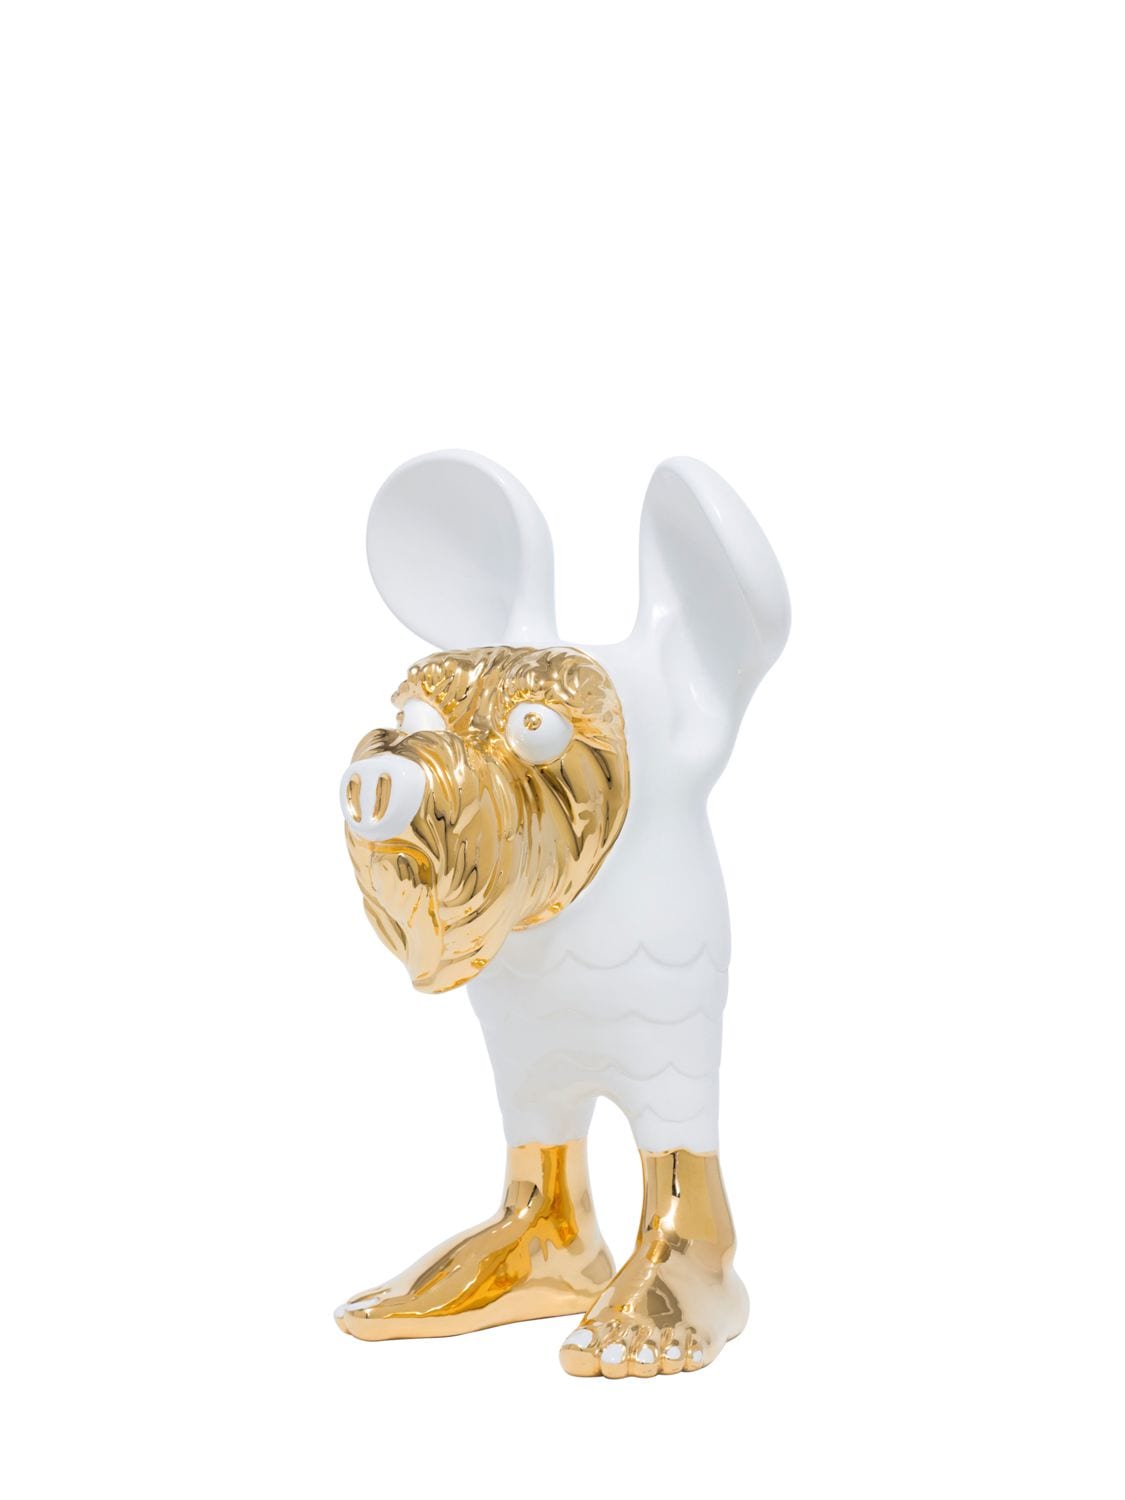 Matteo Cibic Limit.ed Borbo Ceramic Figurine In Gold,white